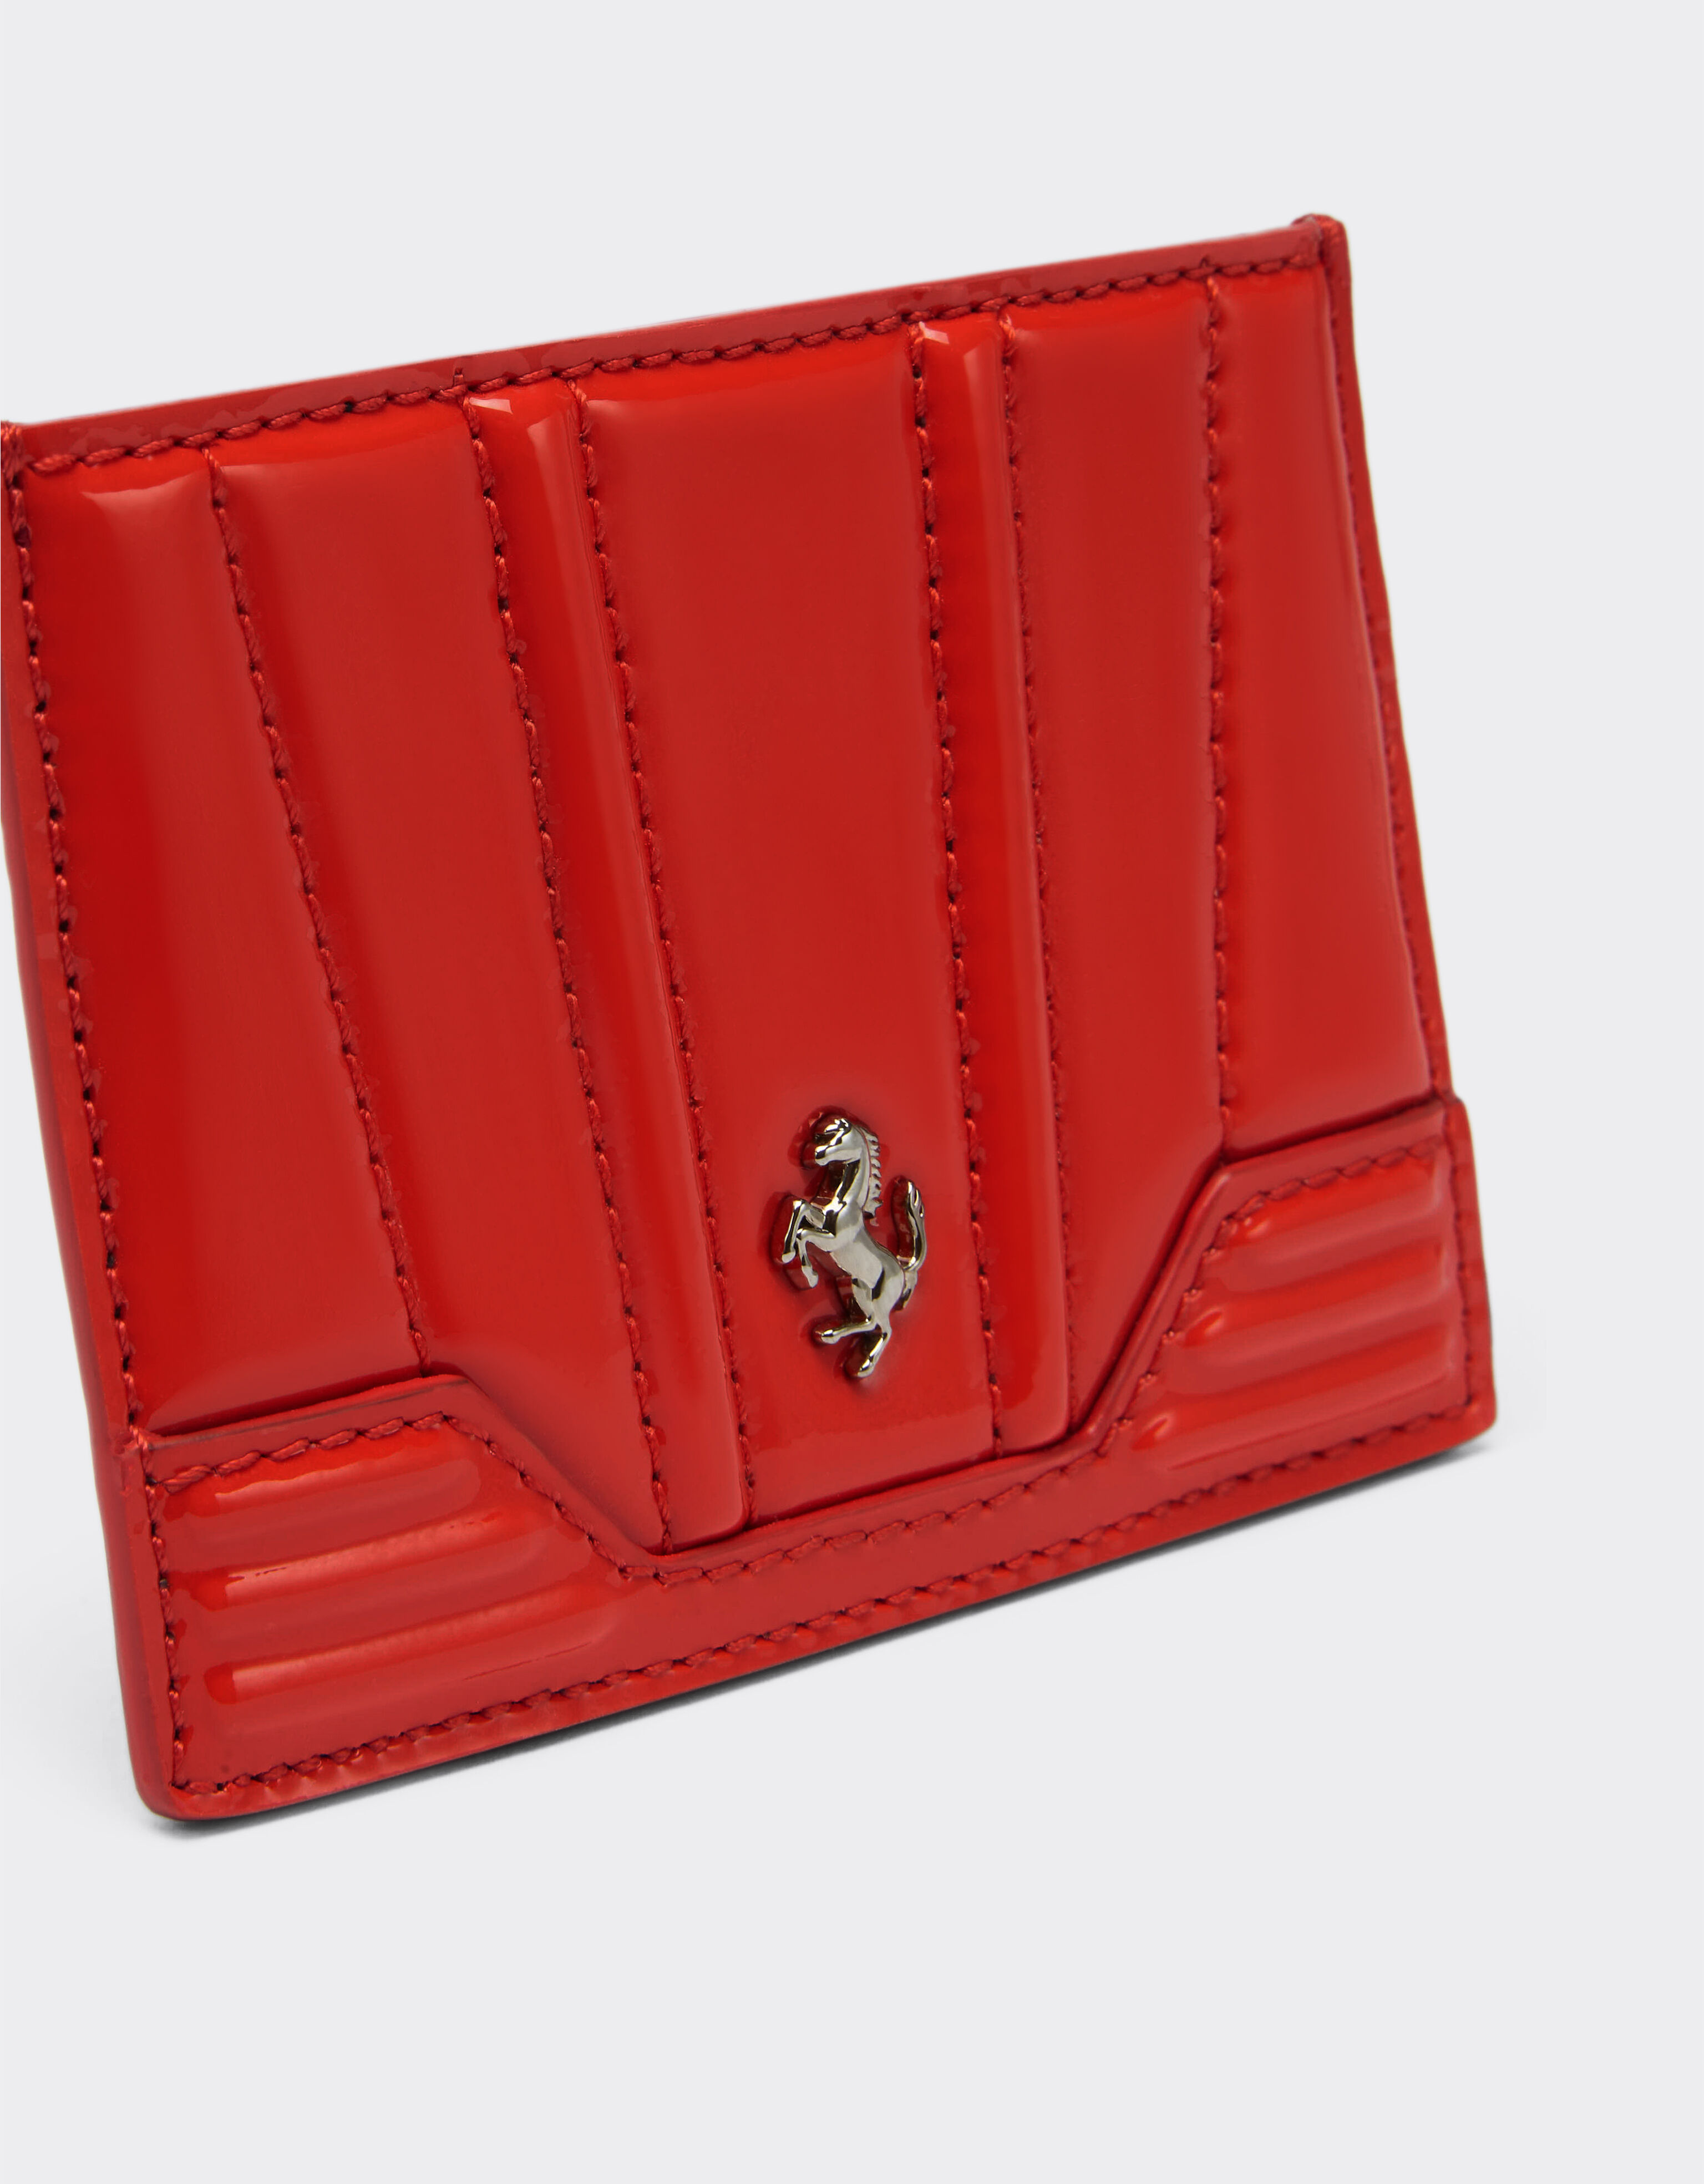 Ferrari Card holder in patent leather Rosso Dino 20243f